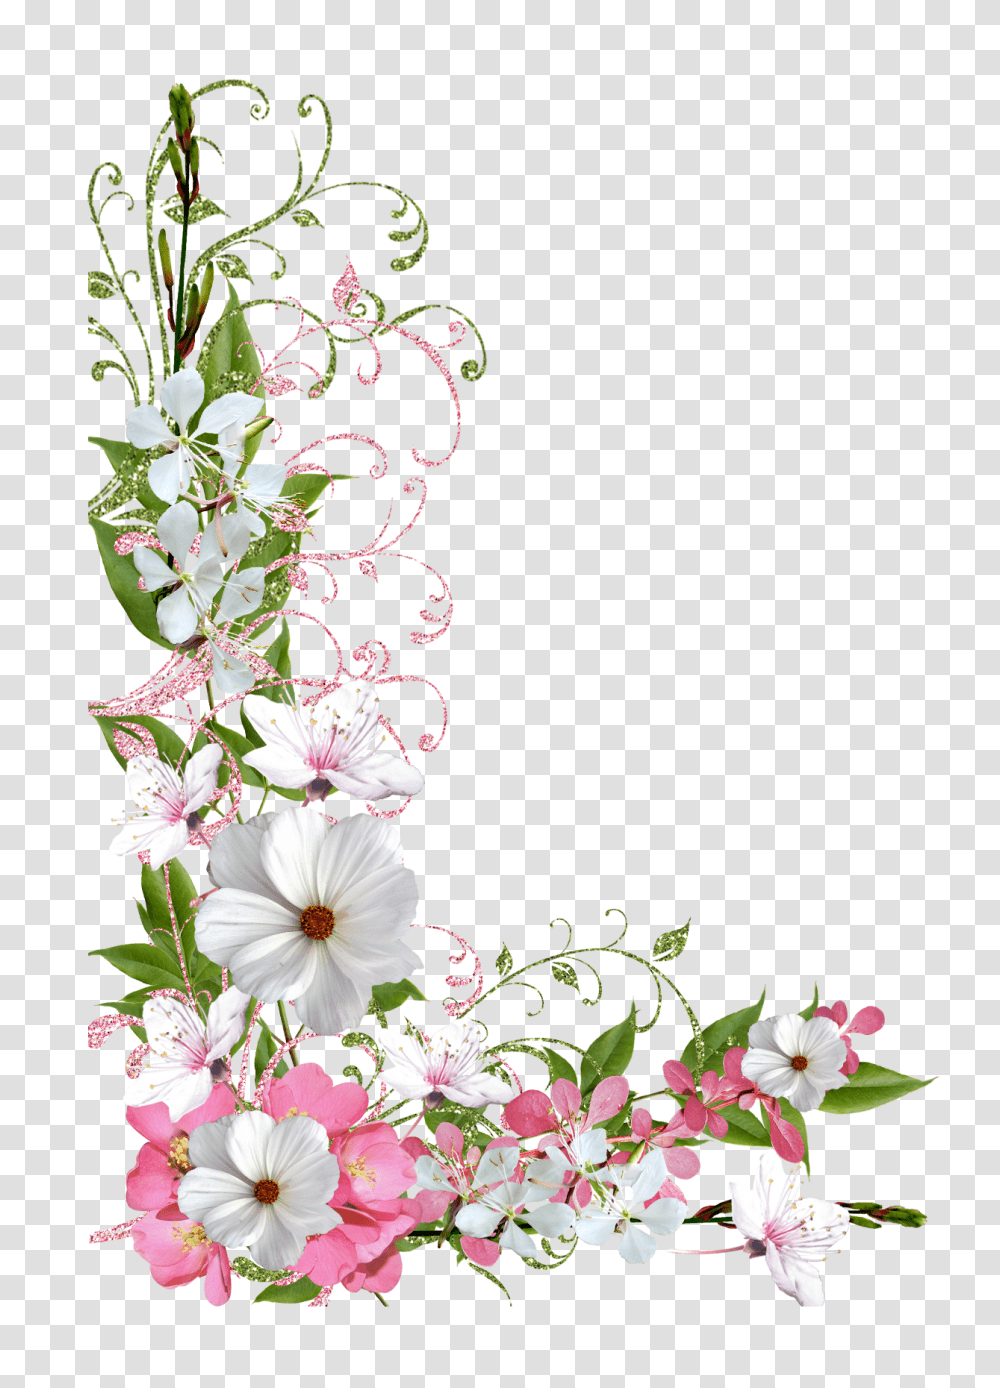 Spring Decor Picture Clipart Frame Pink Flower Border, Plant, Petal, Clothing, Floral Design Transparent Png